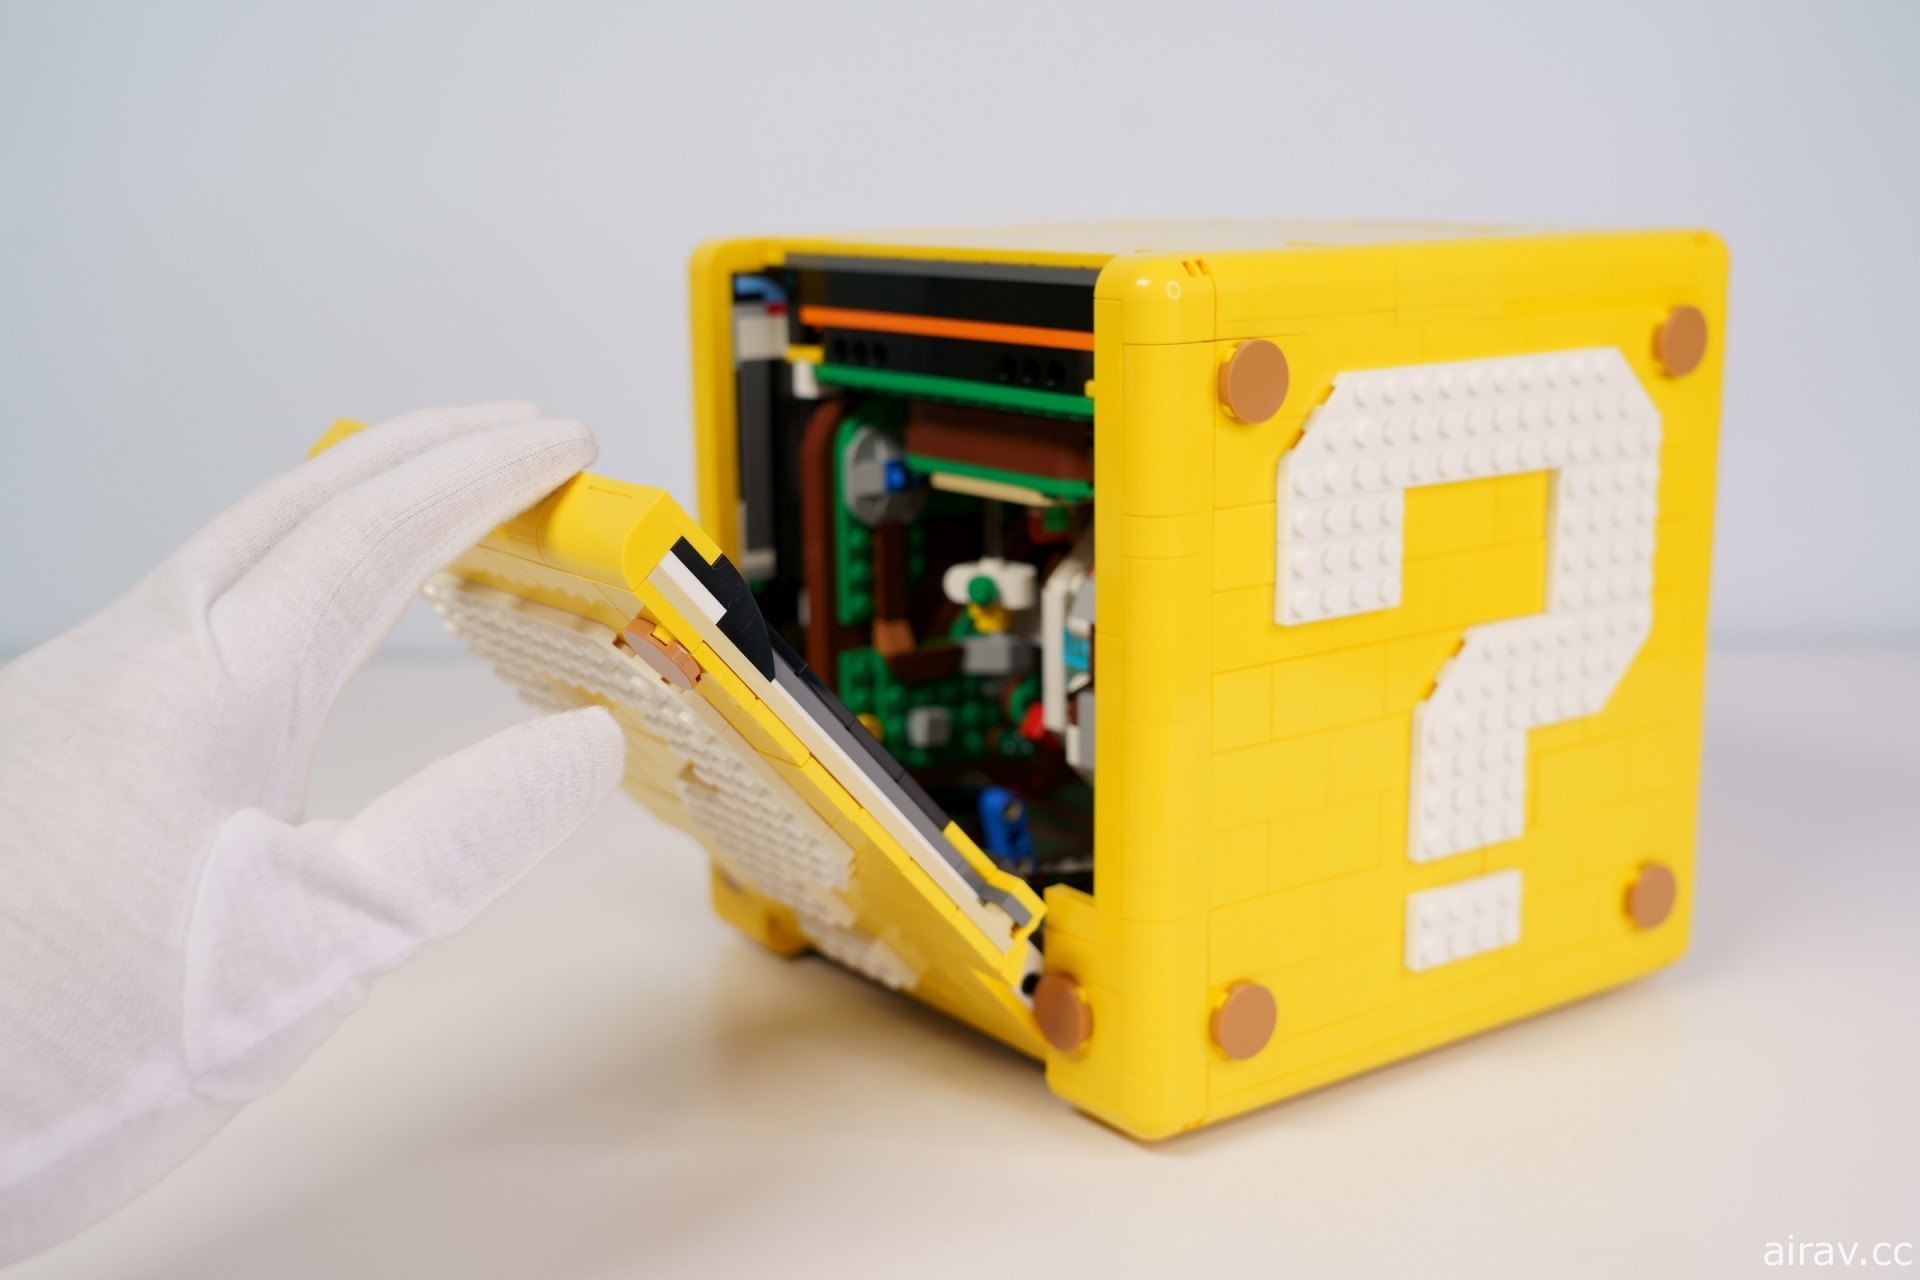 樂高最新盒組「樂高超級瑪利歐 64 ？磚塊」一手開箱 濃縮經典場景的巧思設計